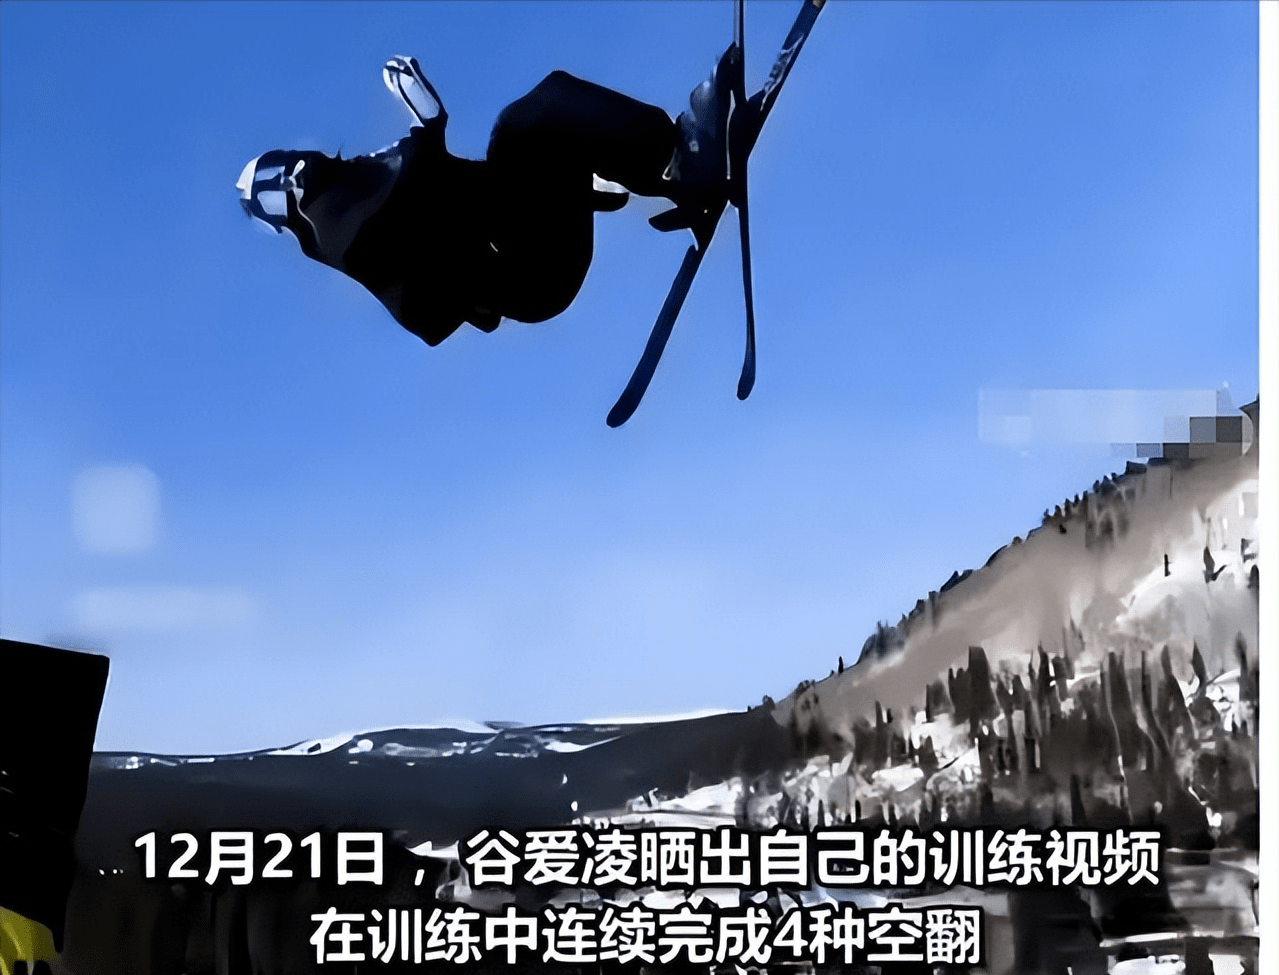 谷爱凌再次创造新的世界纪录，成功挑战1260尾巴抓板，滑雪学习和